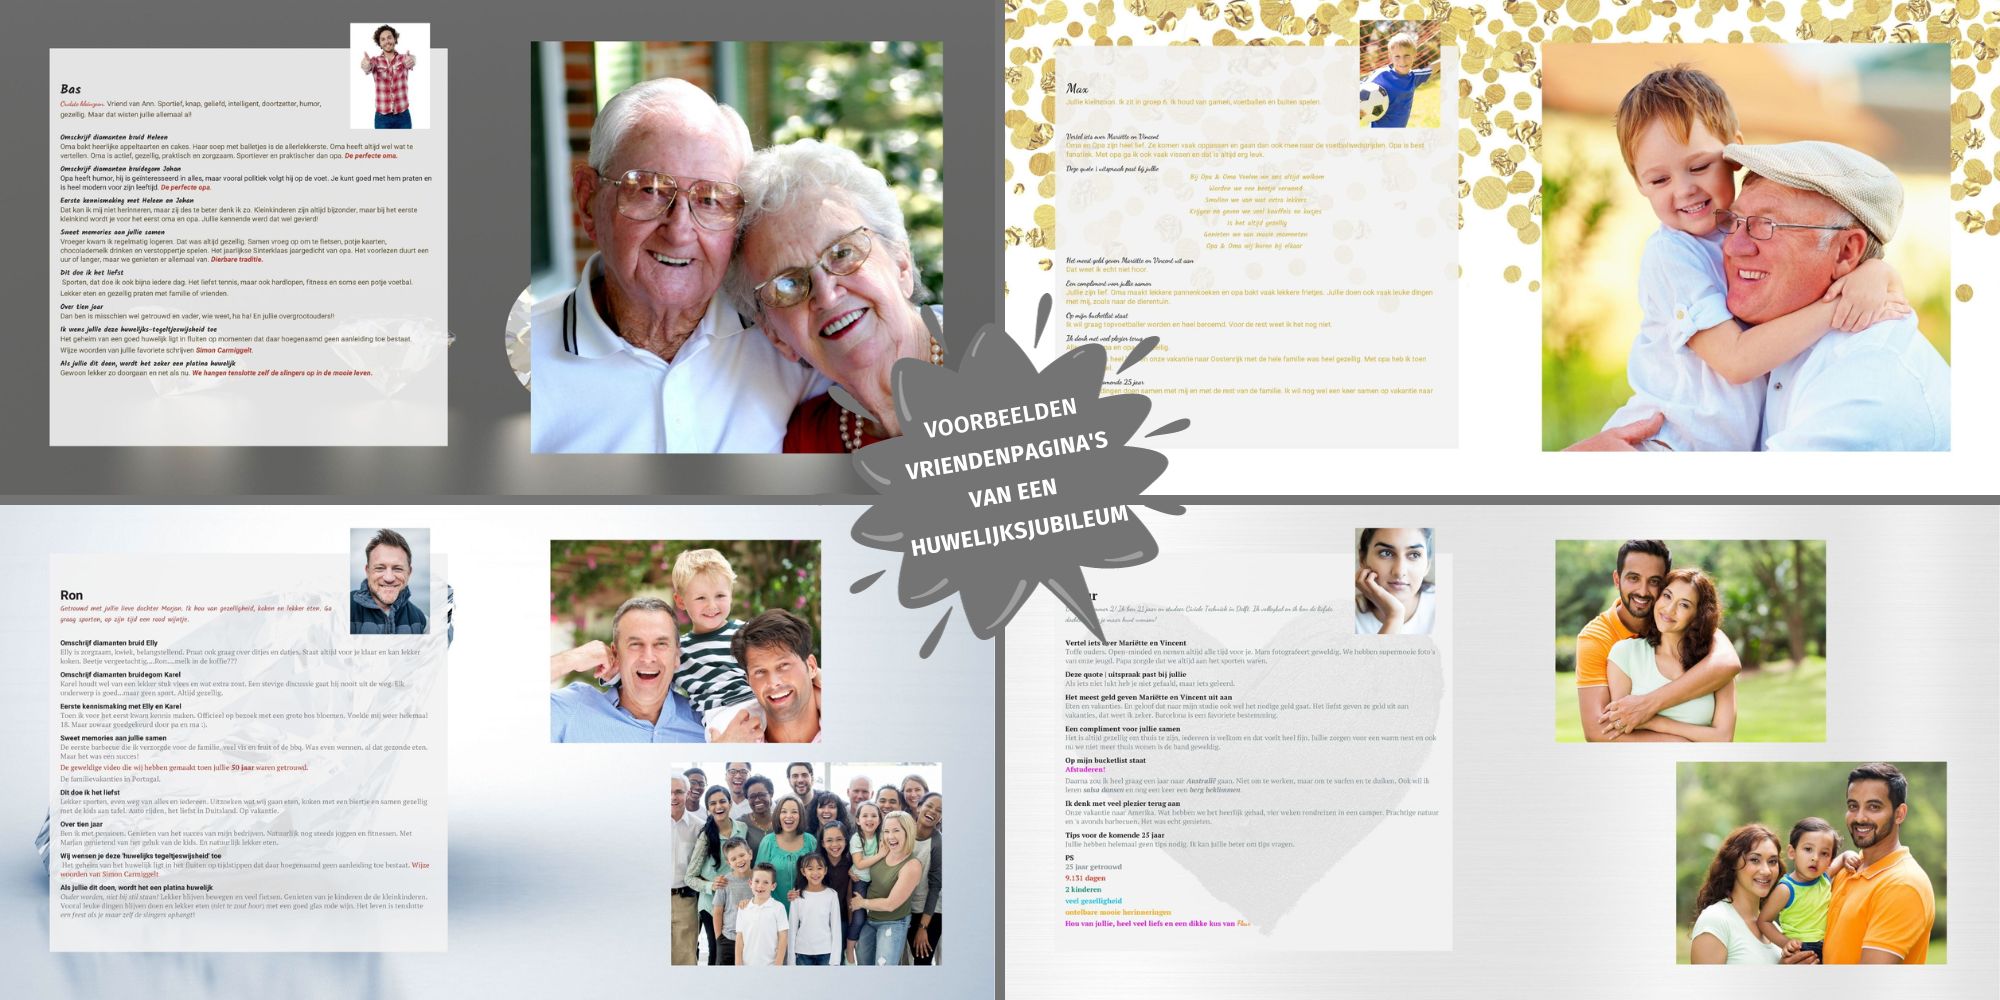 60 jaar getrouwd diamanten huwelijk idee cadeau vriendenboek vriendenboekje